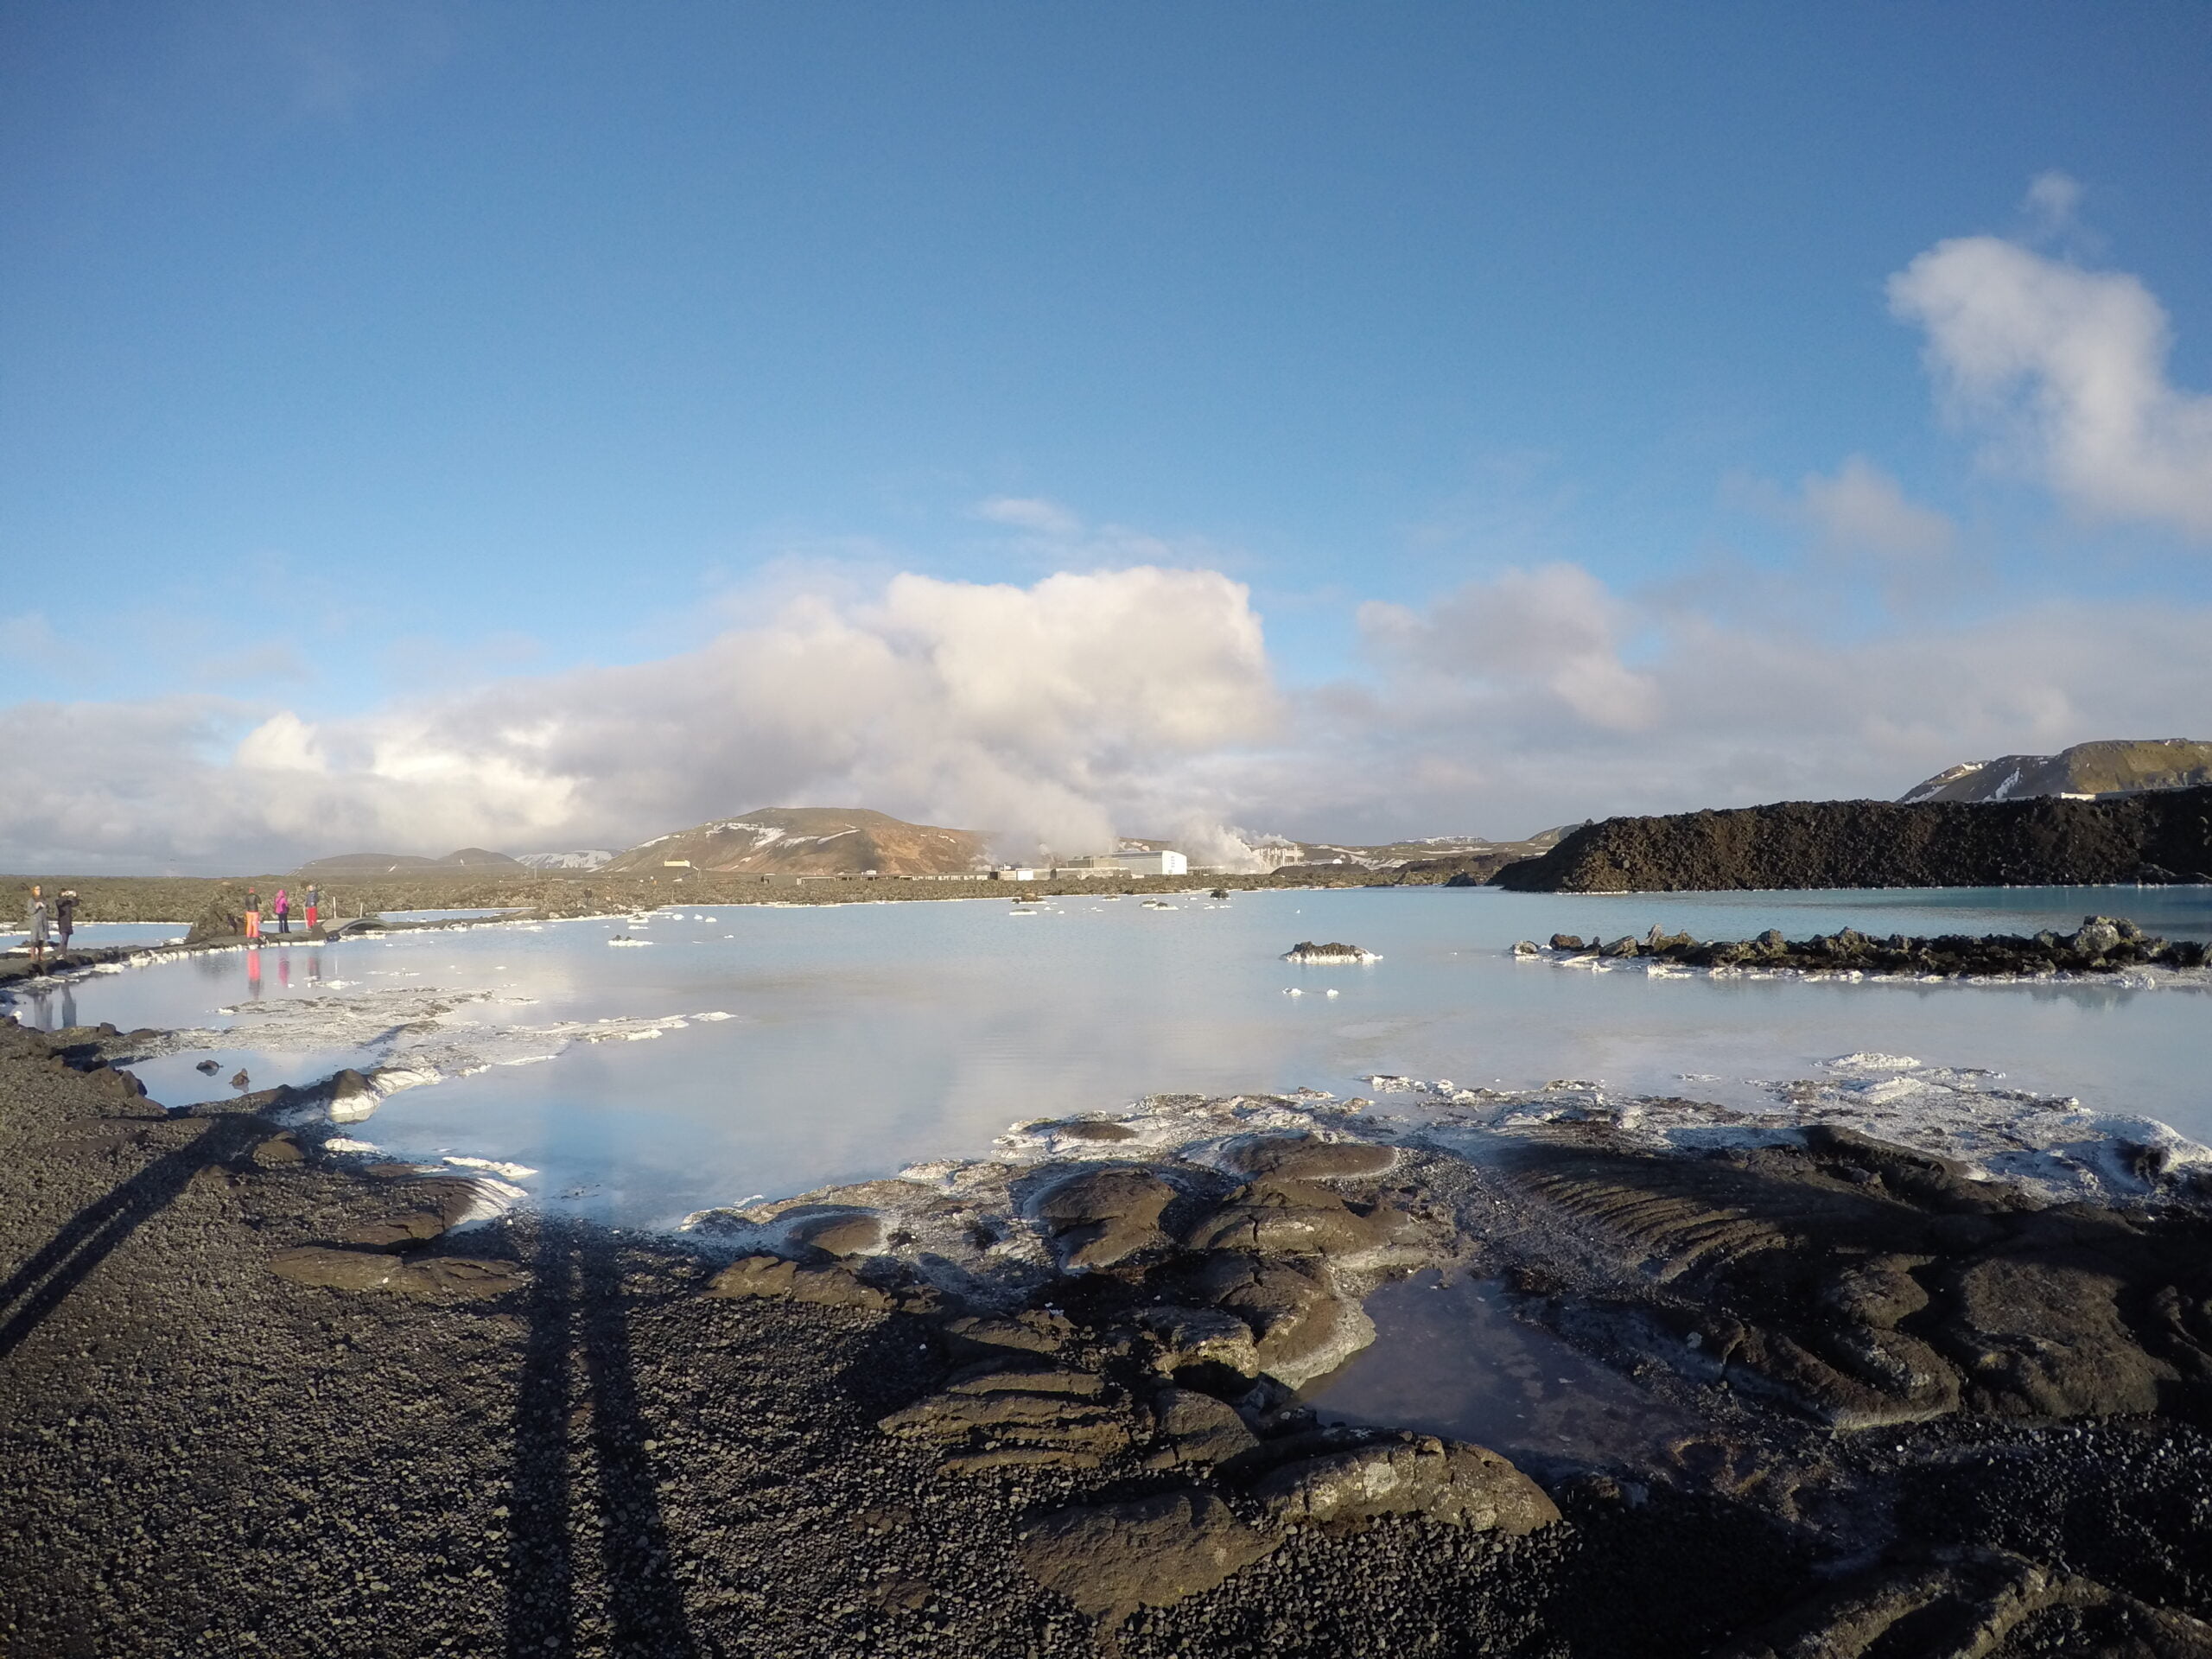 Le Blue Lagoon en Islande